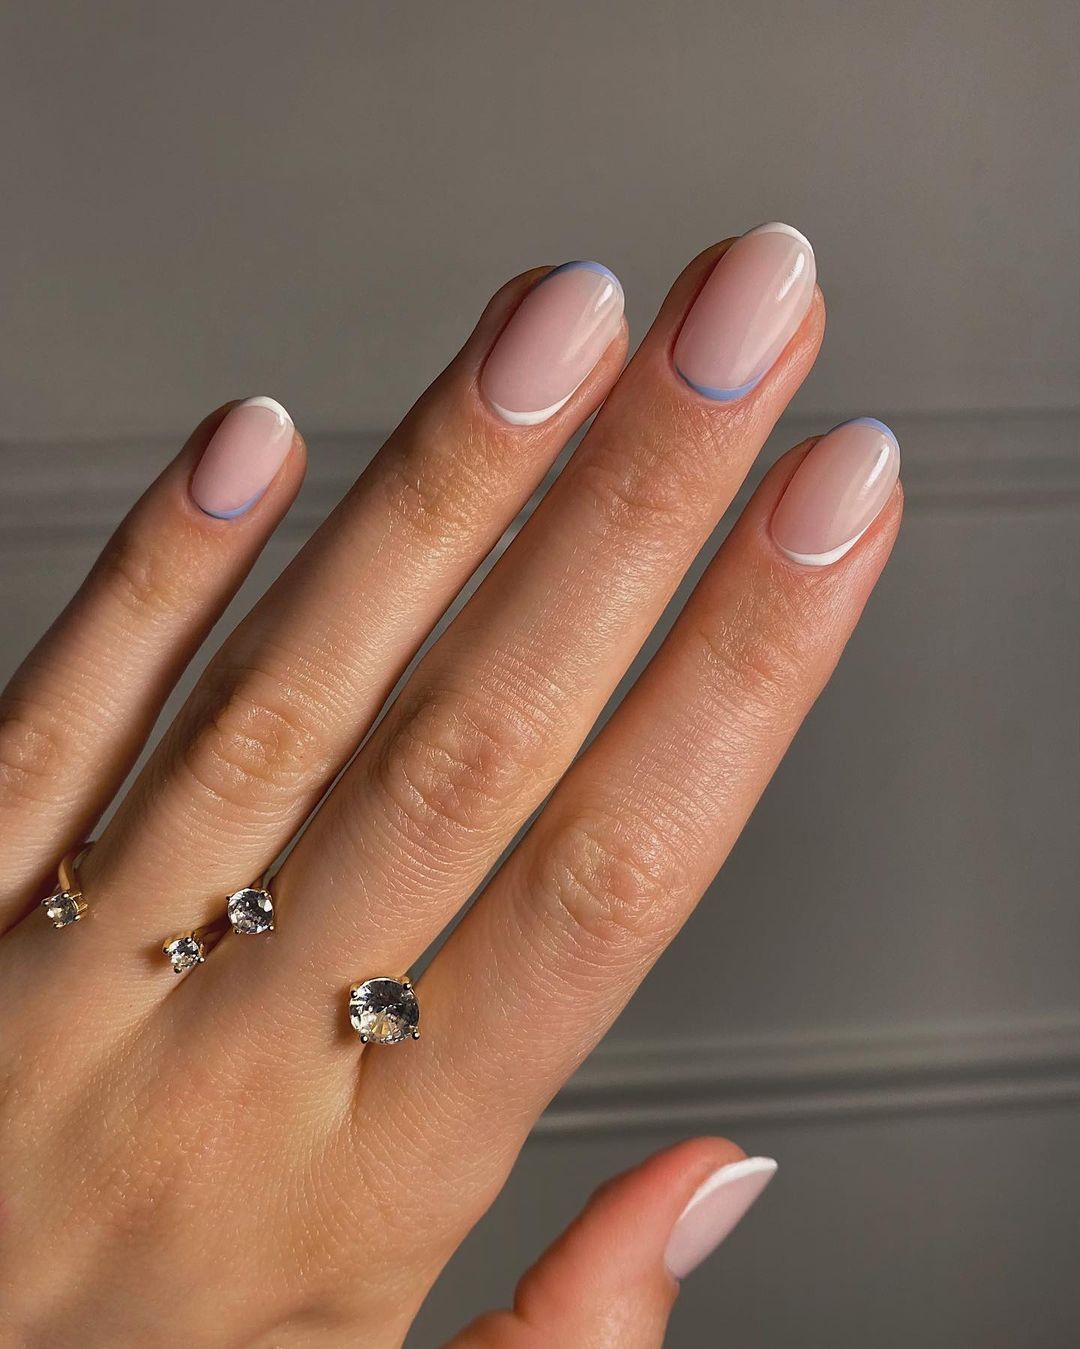 Francesinha minimalista é tendência de nail art (Foto: Reprodução/Instagram @emenstudio_)